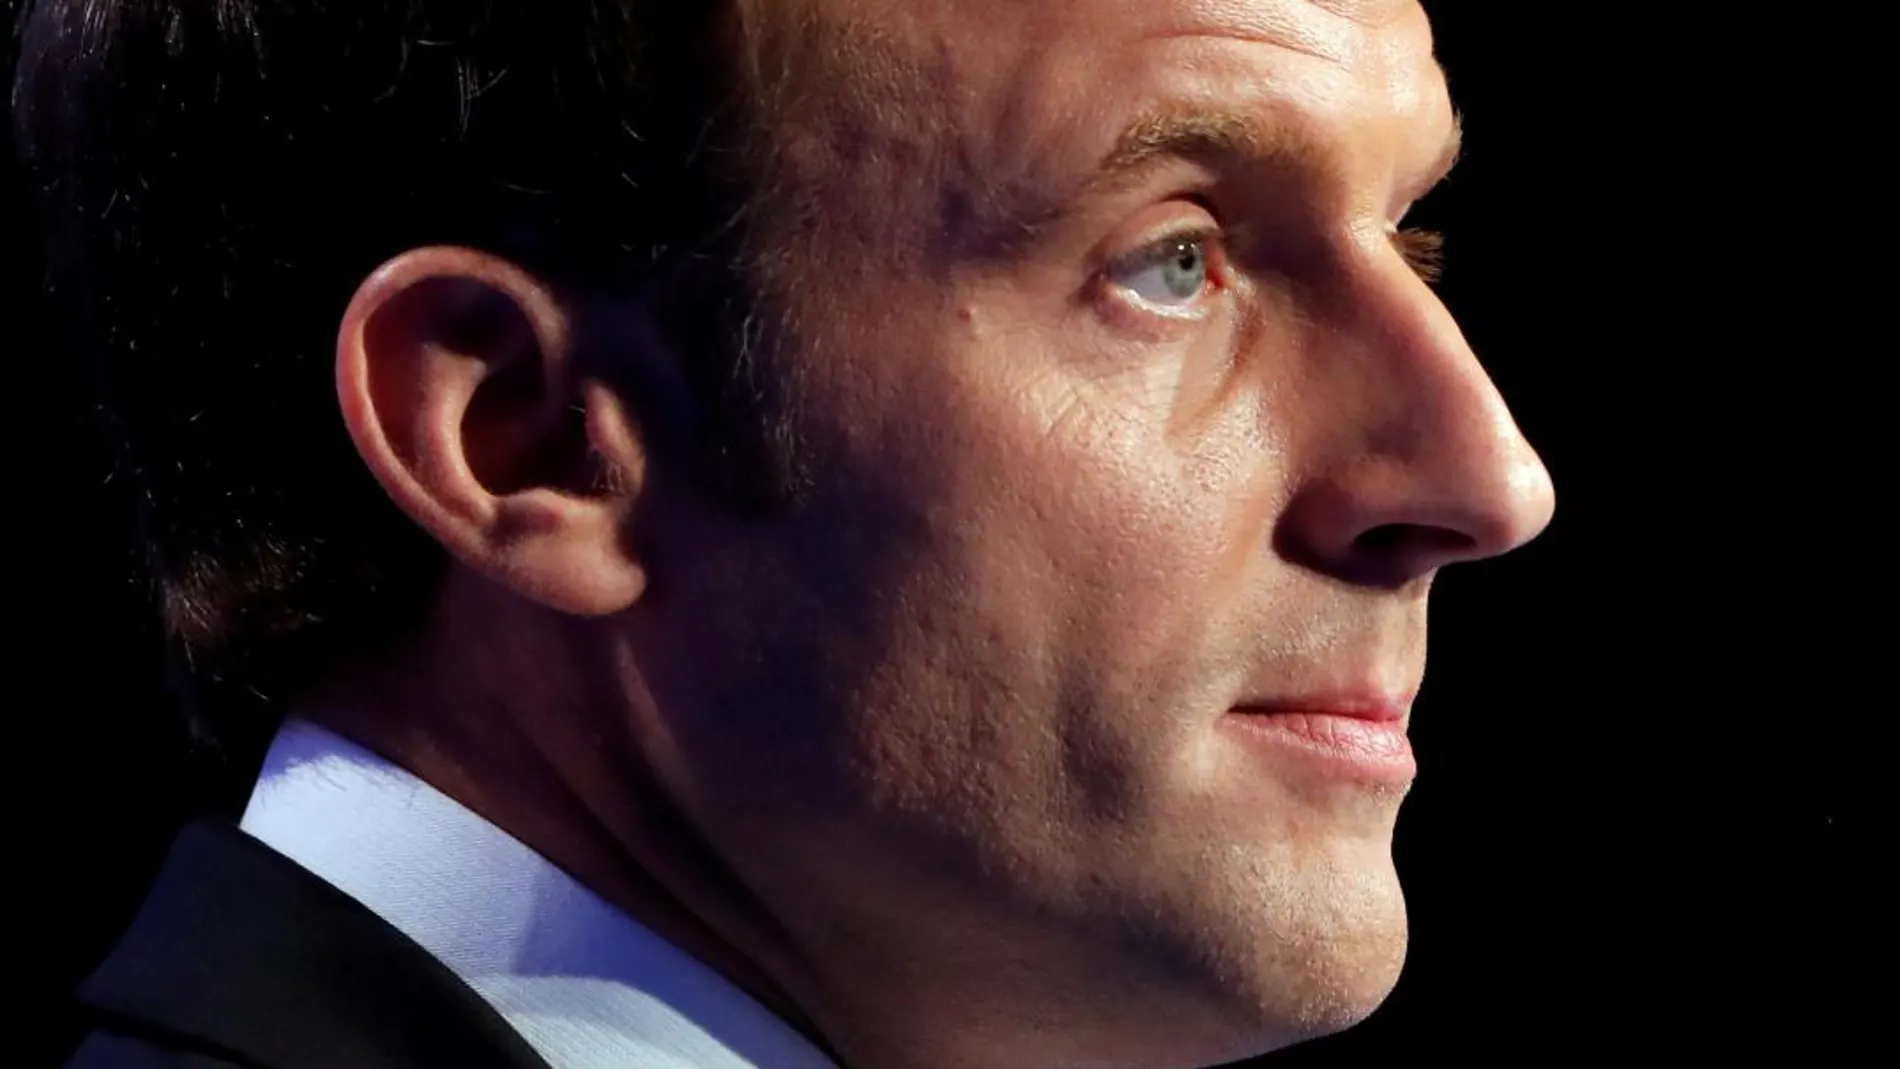 El presidente francés, Emmanuel Macron, en una imagen de archivo